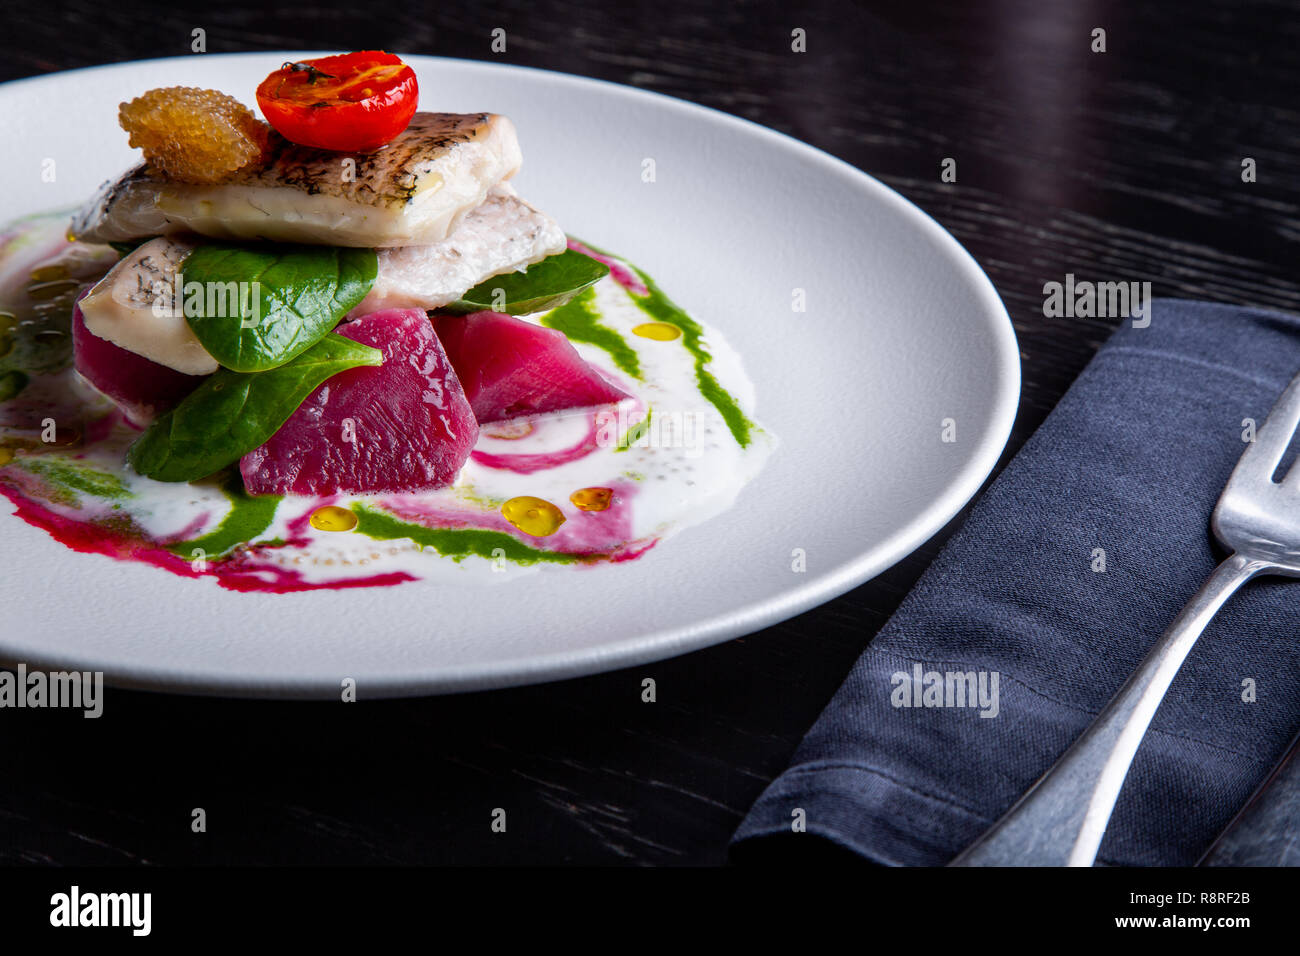 Restaurant délicieux plat de poisson blanc, brochet, loup de mer avec des légumes sous la sauce dans le fond. Exclusif sur l'alimentation saine grande plaque blanche libre Banque D'Images